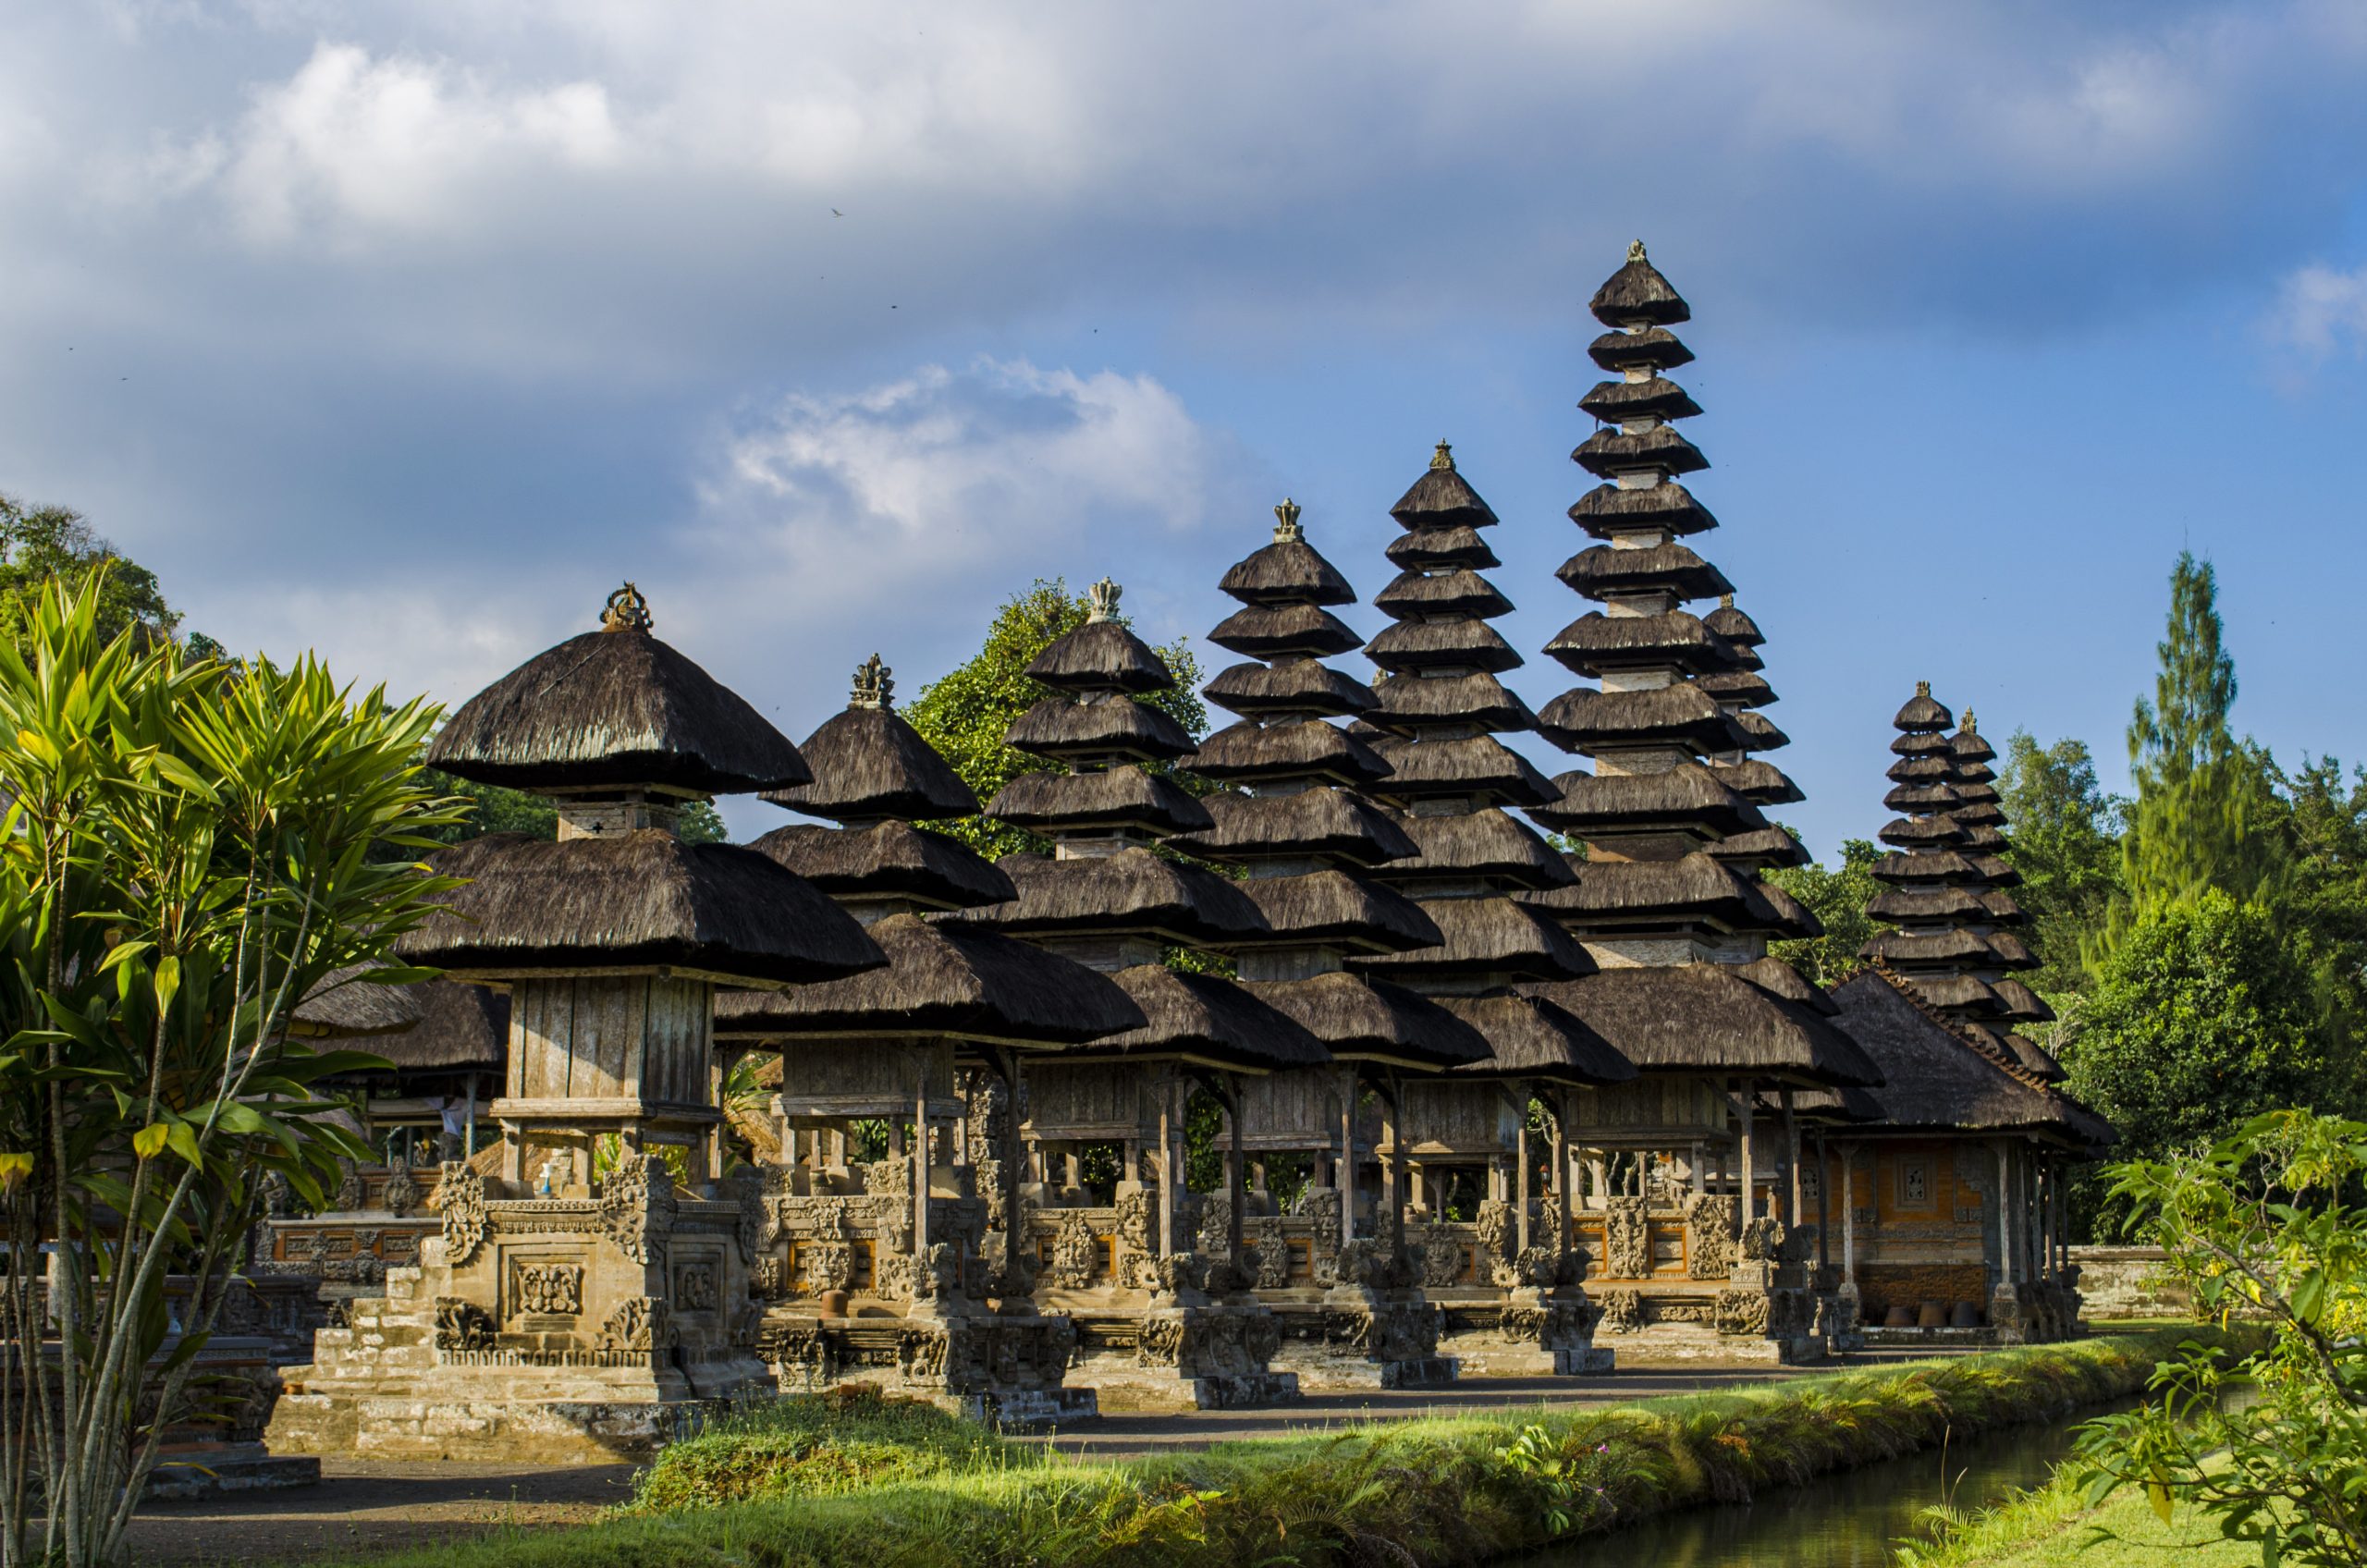 Zboruri EMIRATES spre Bali, Indonezia de la 1065 euro dus-intors, cu bagaj de cala inclus